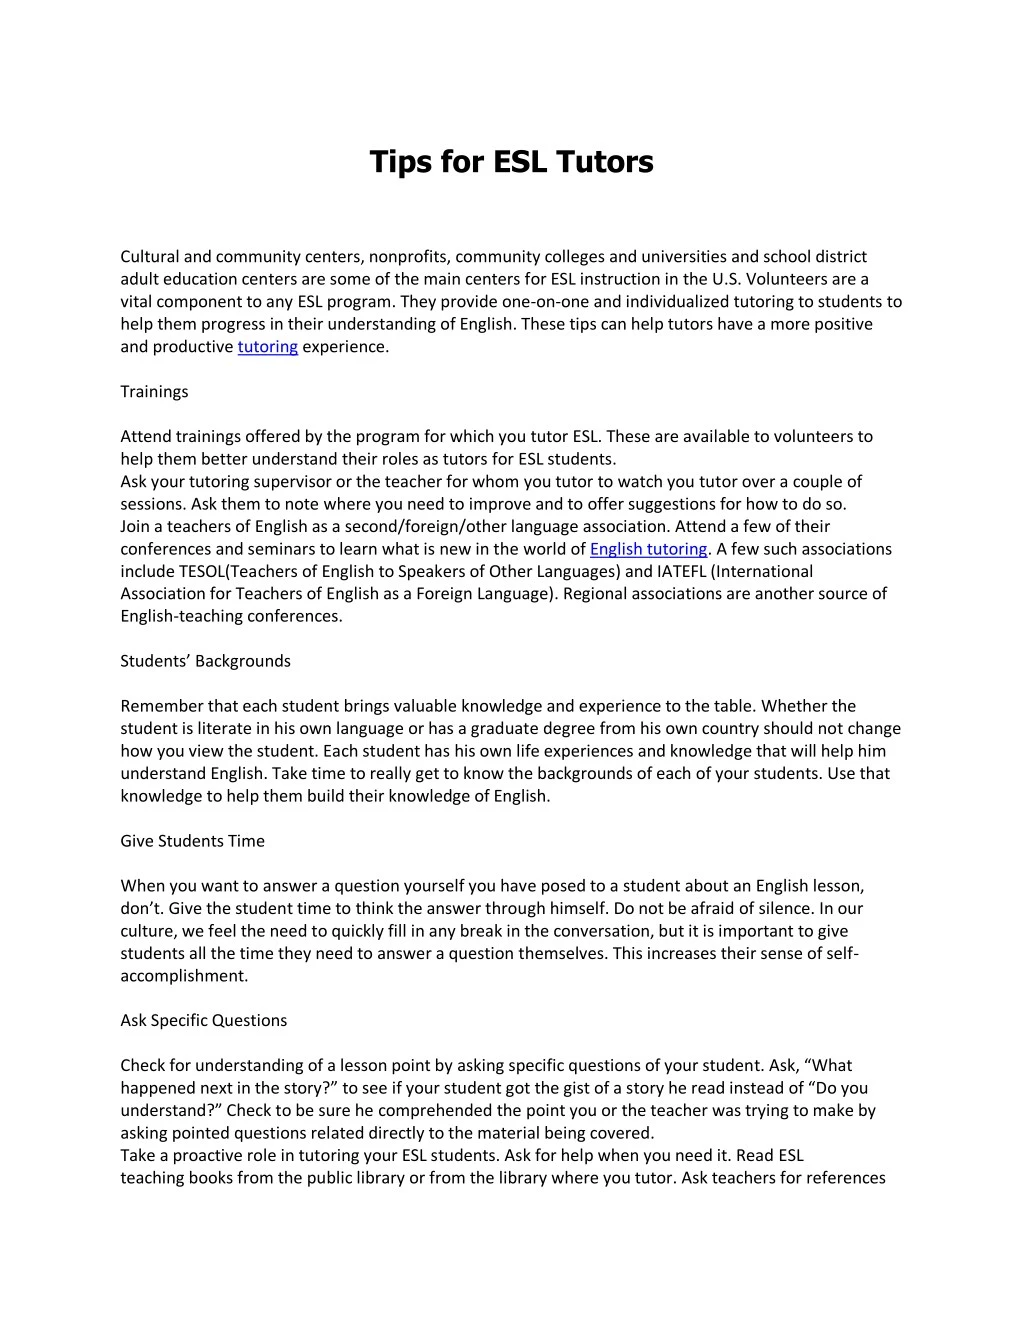 tips for esl tutors